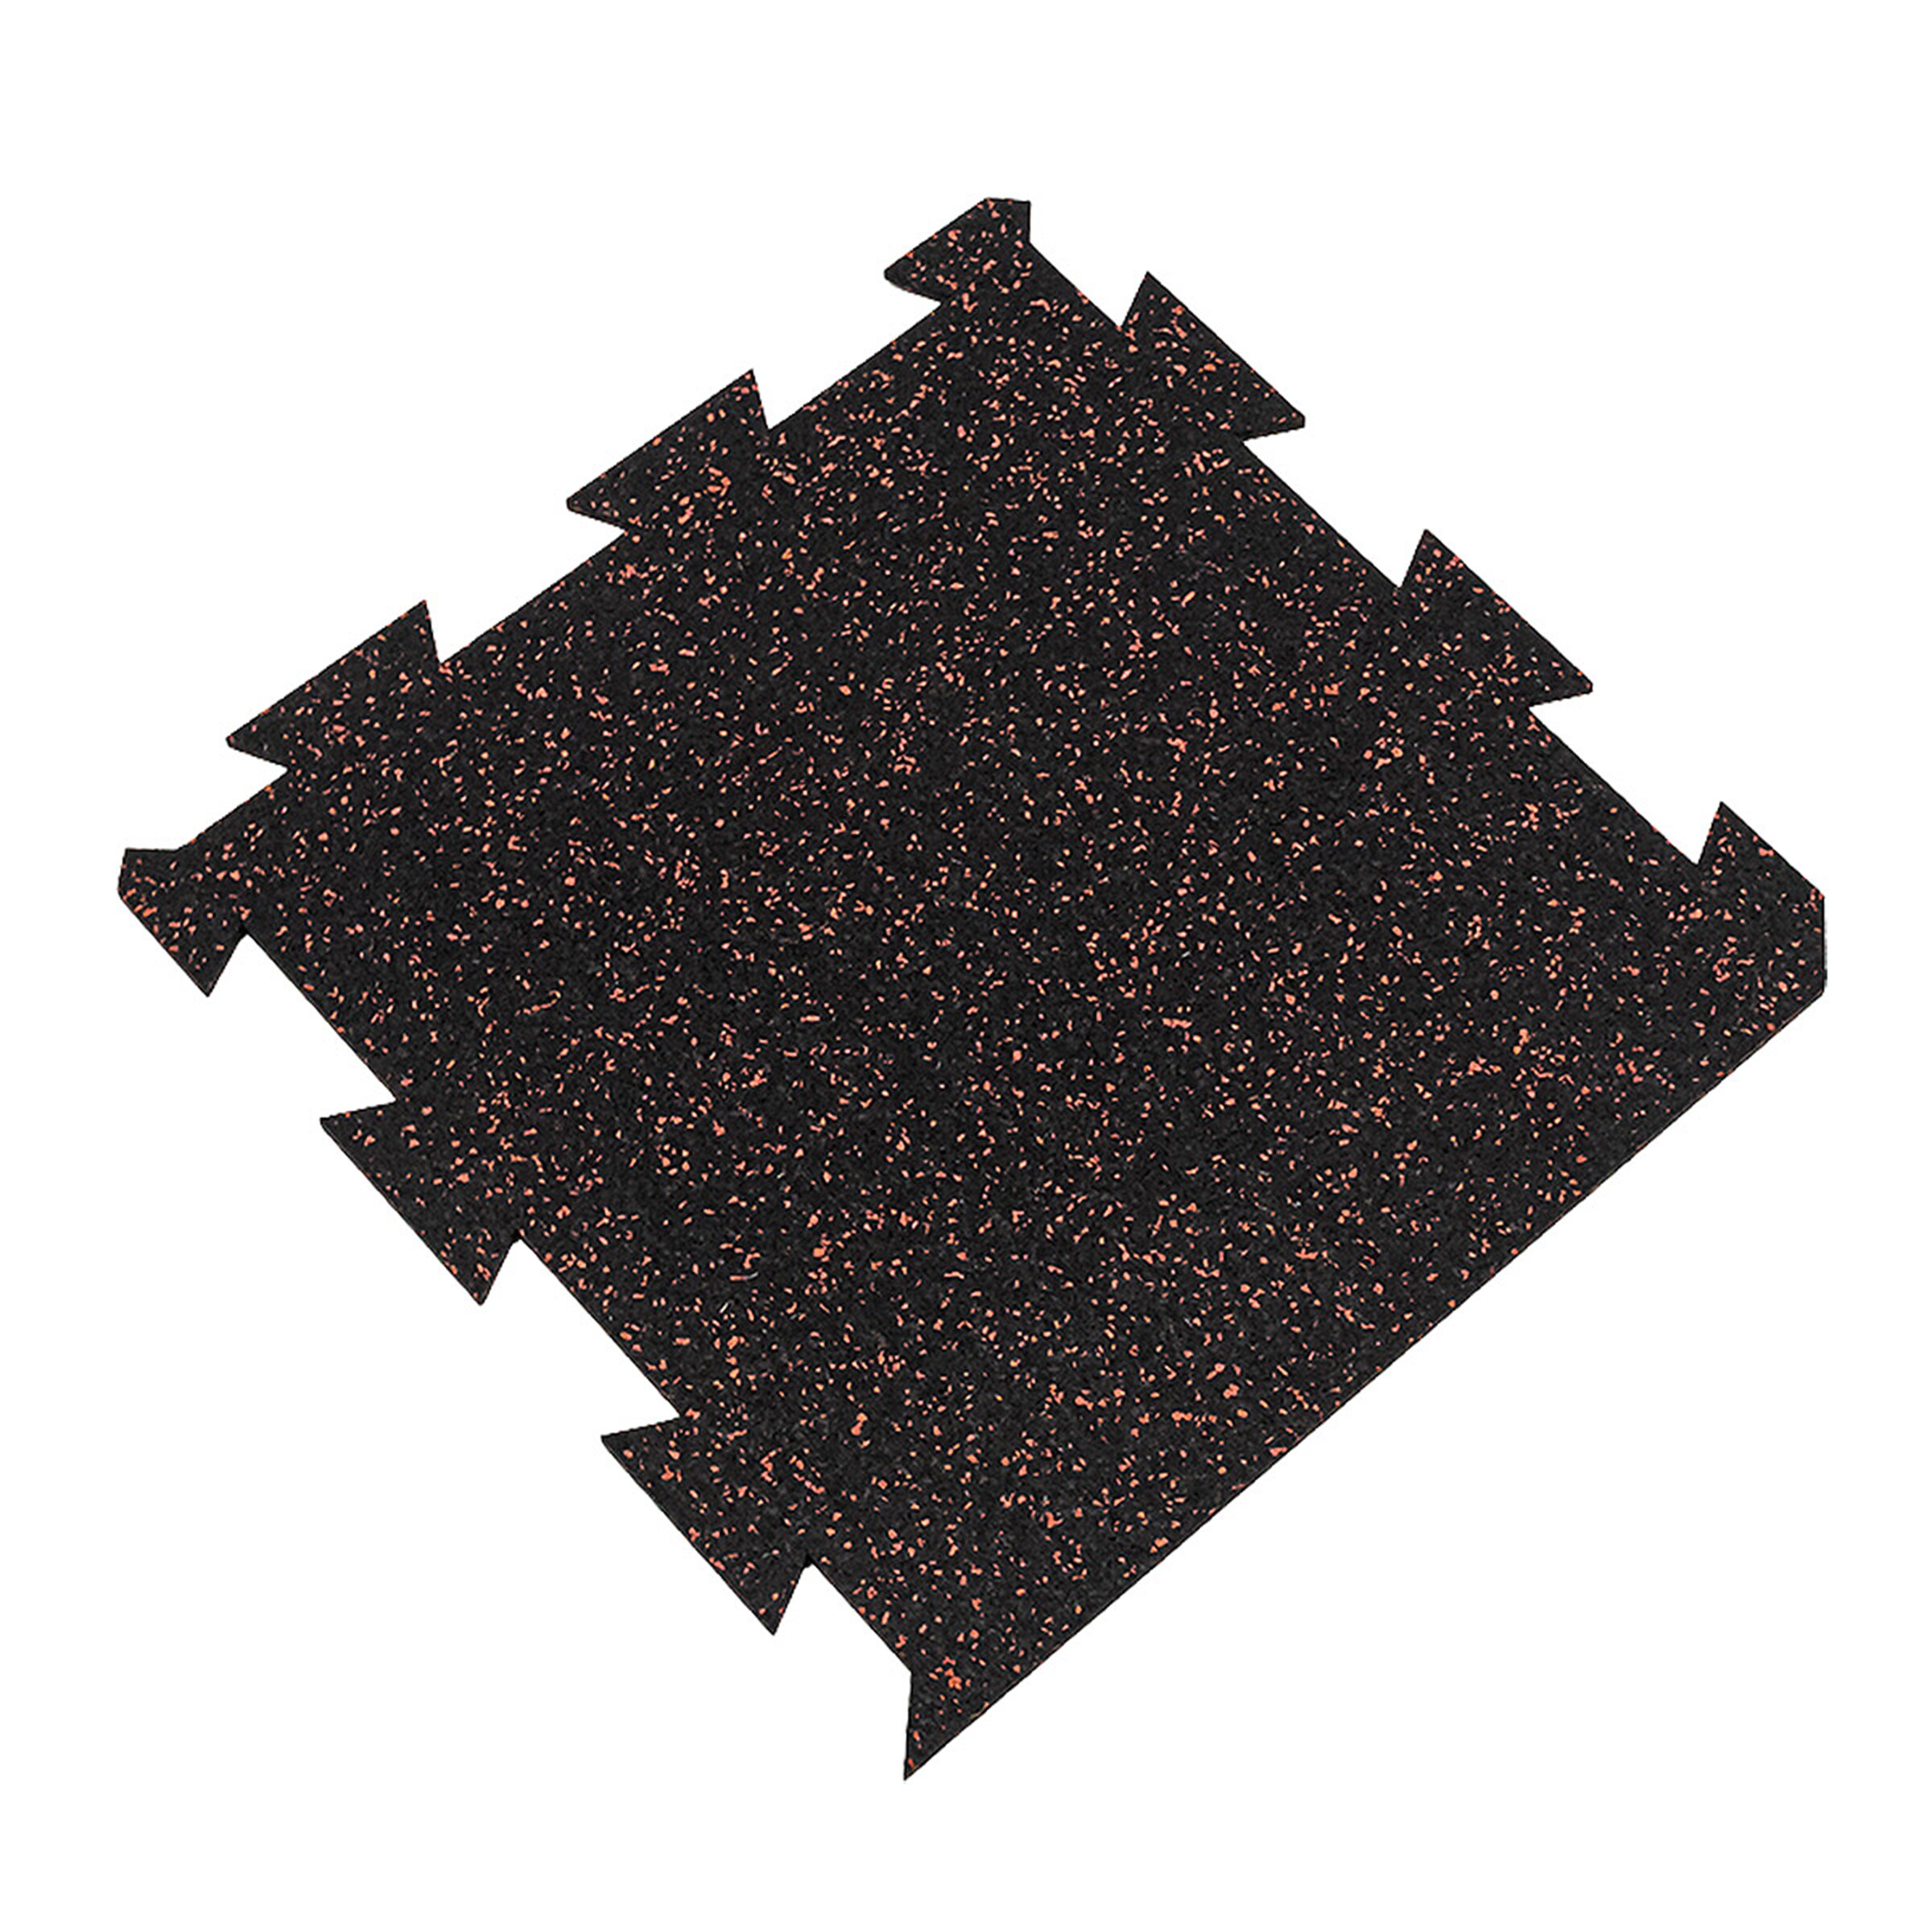 Černo-červená gumová puzzle modulová dlaždice (okraj) FLOMA SF1050 FitFlo - délka 50 cm, šířka 50 cm, výška 0,8 cm